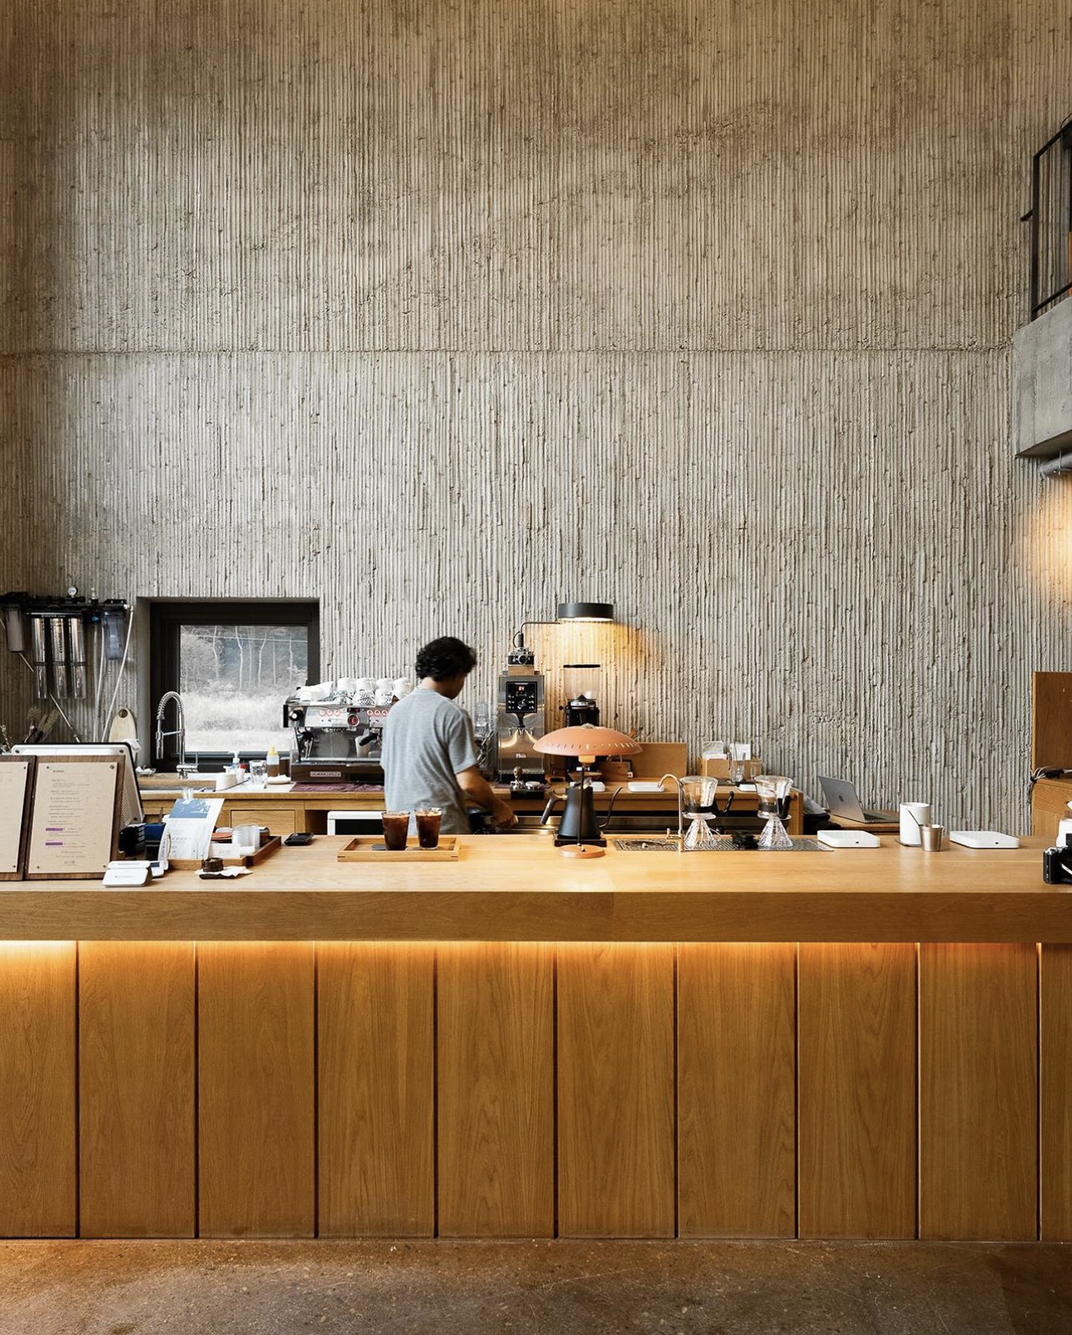 工作室和书籍 画廊 咖啡厅空间Suyeonmokseo 韩国 深圳 上海 北京 广州 武汉 咖啡店 餐饮商业 logo设计 vi设计 空间设计